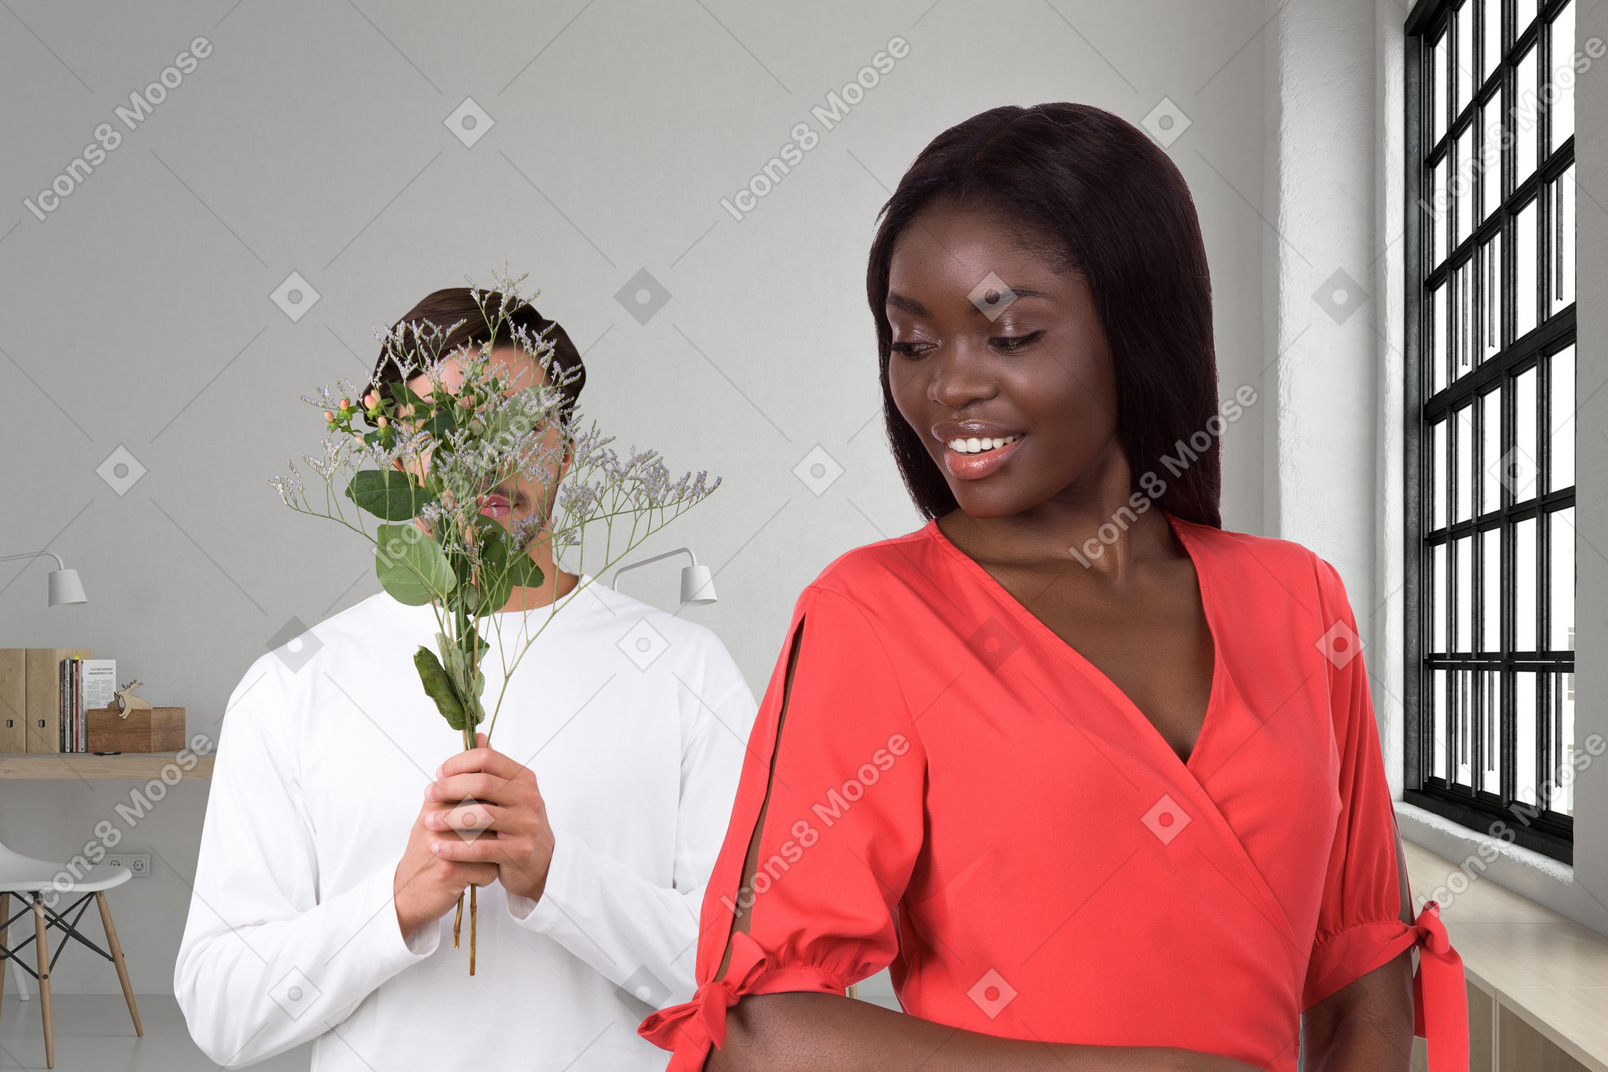 Homem dando a uma mulher um buquê de flores